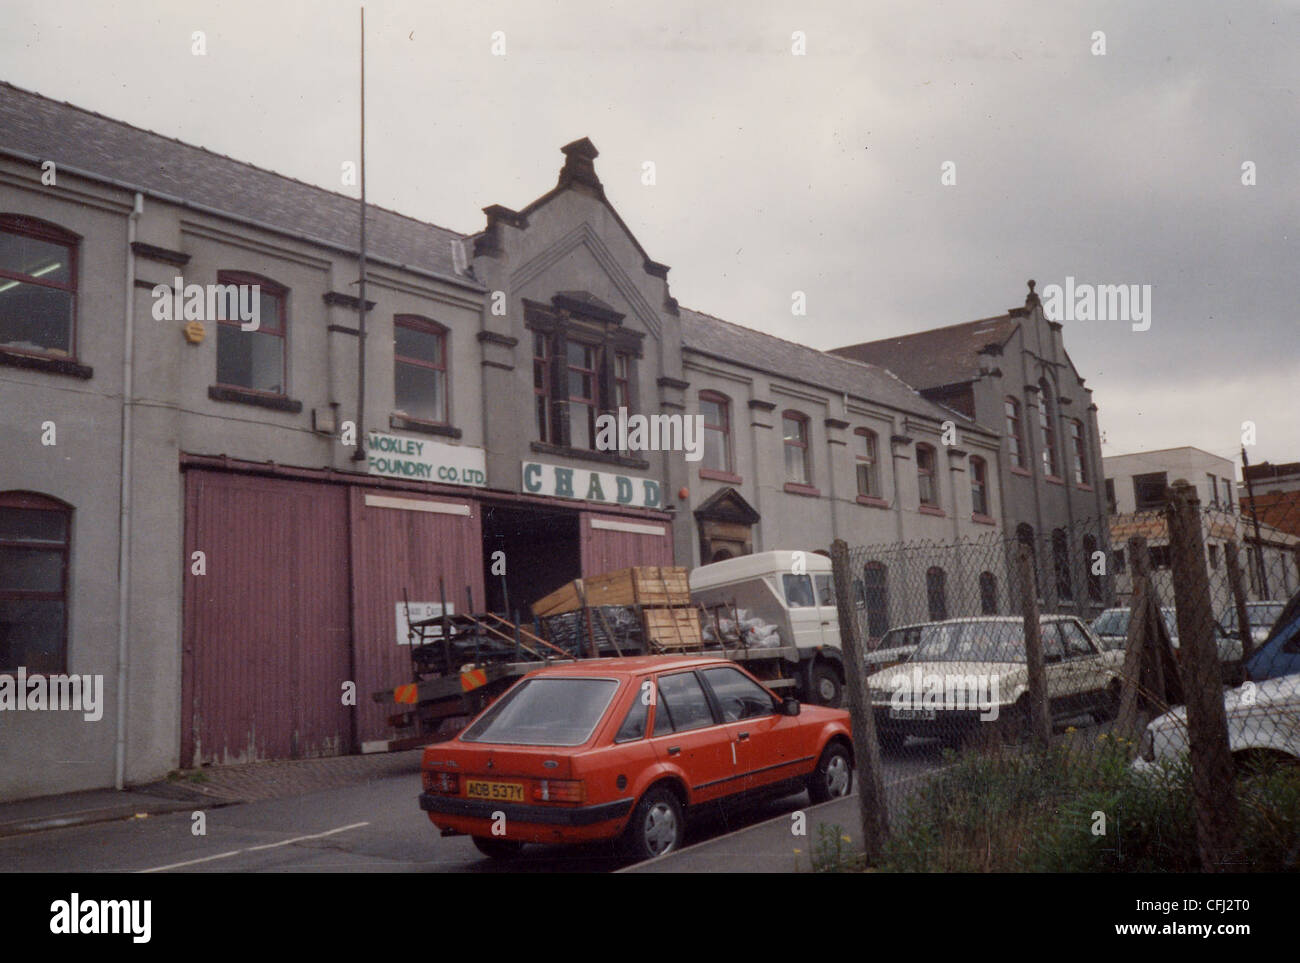 Moxley Foundry Company Ltd., Wolverhampton, Mai 1994. Stockfoto